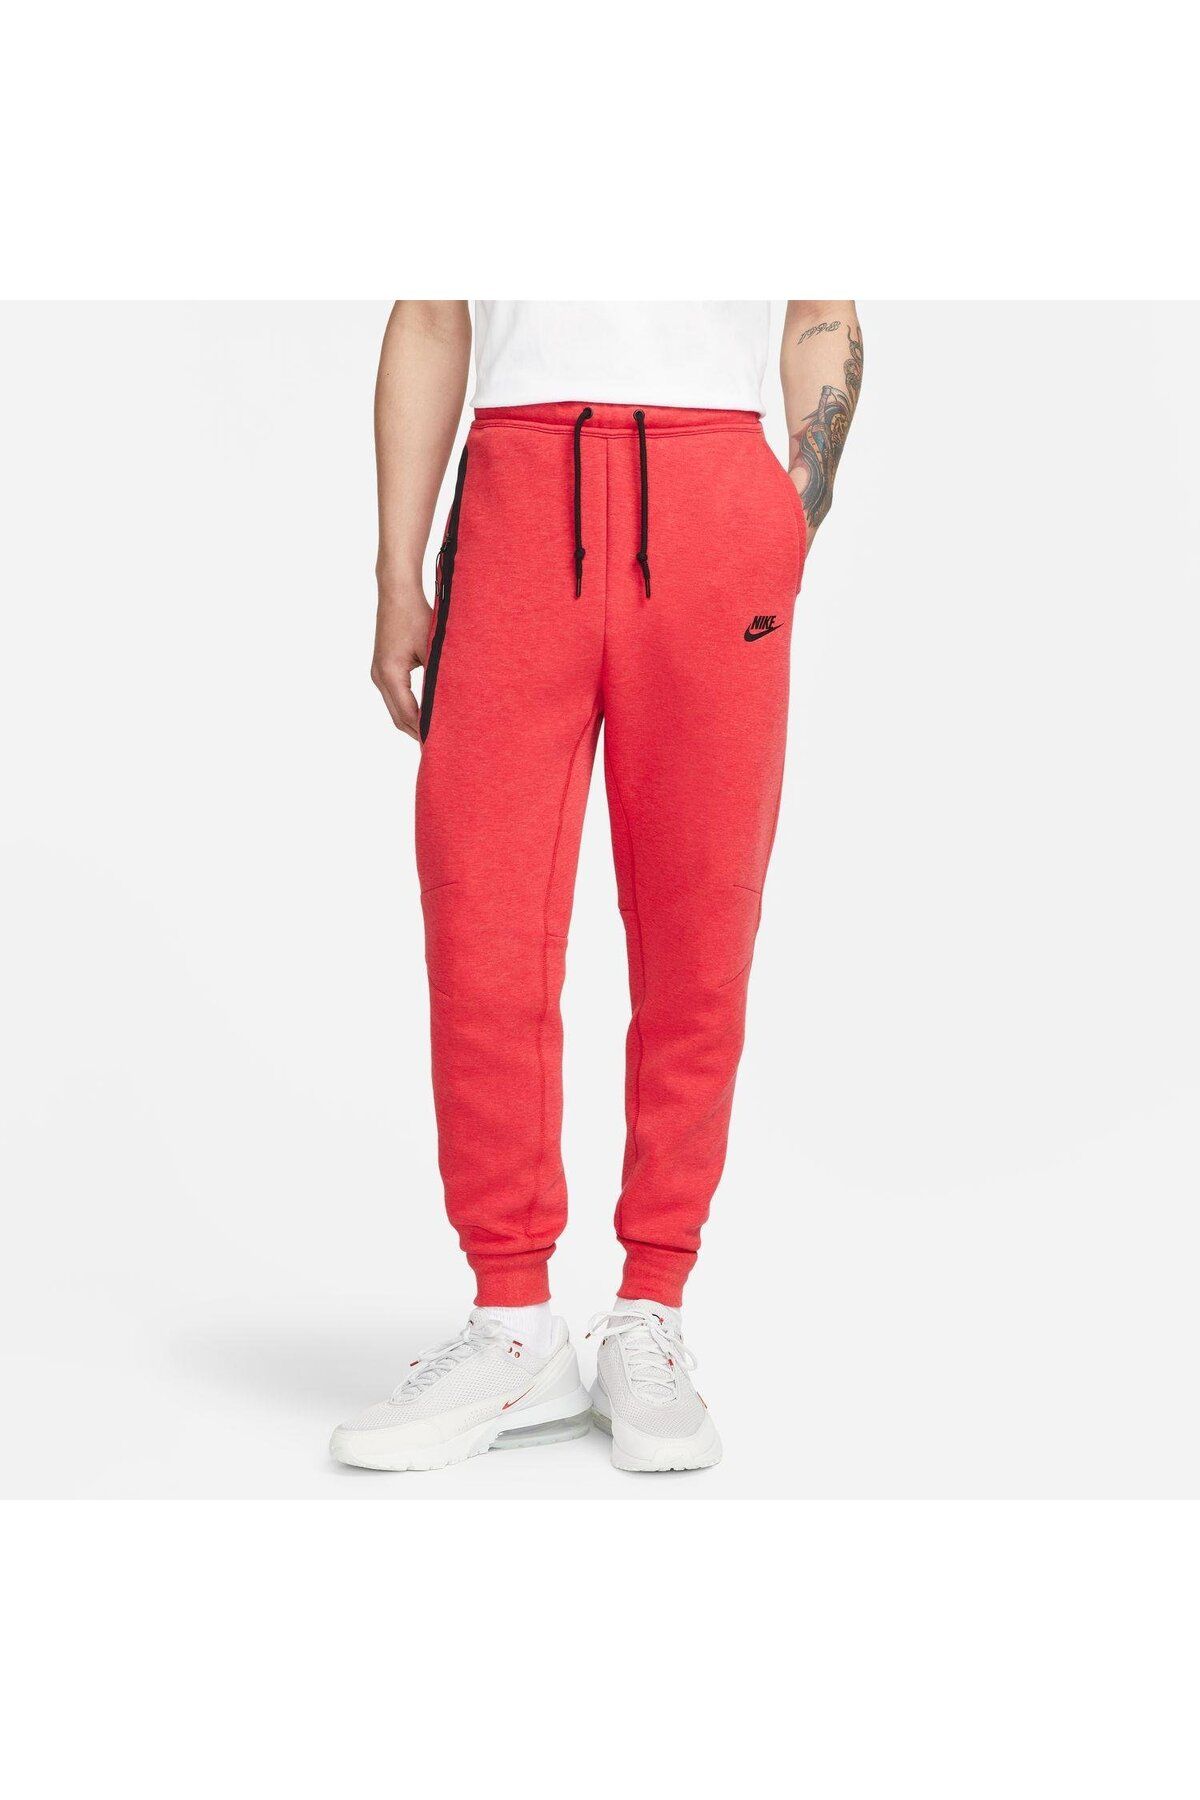 Nike Sportswear Tech Fleece Erkek Jogger ( YENİ SEZON )